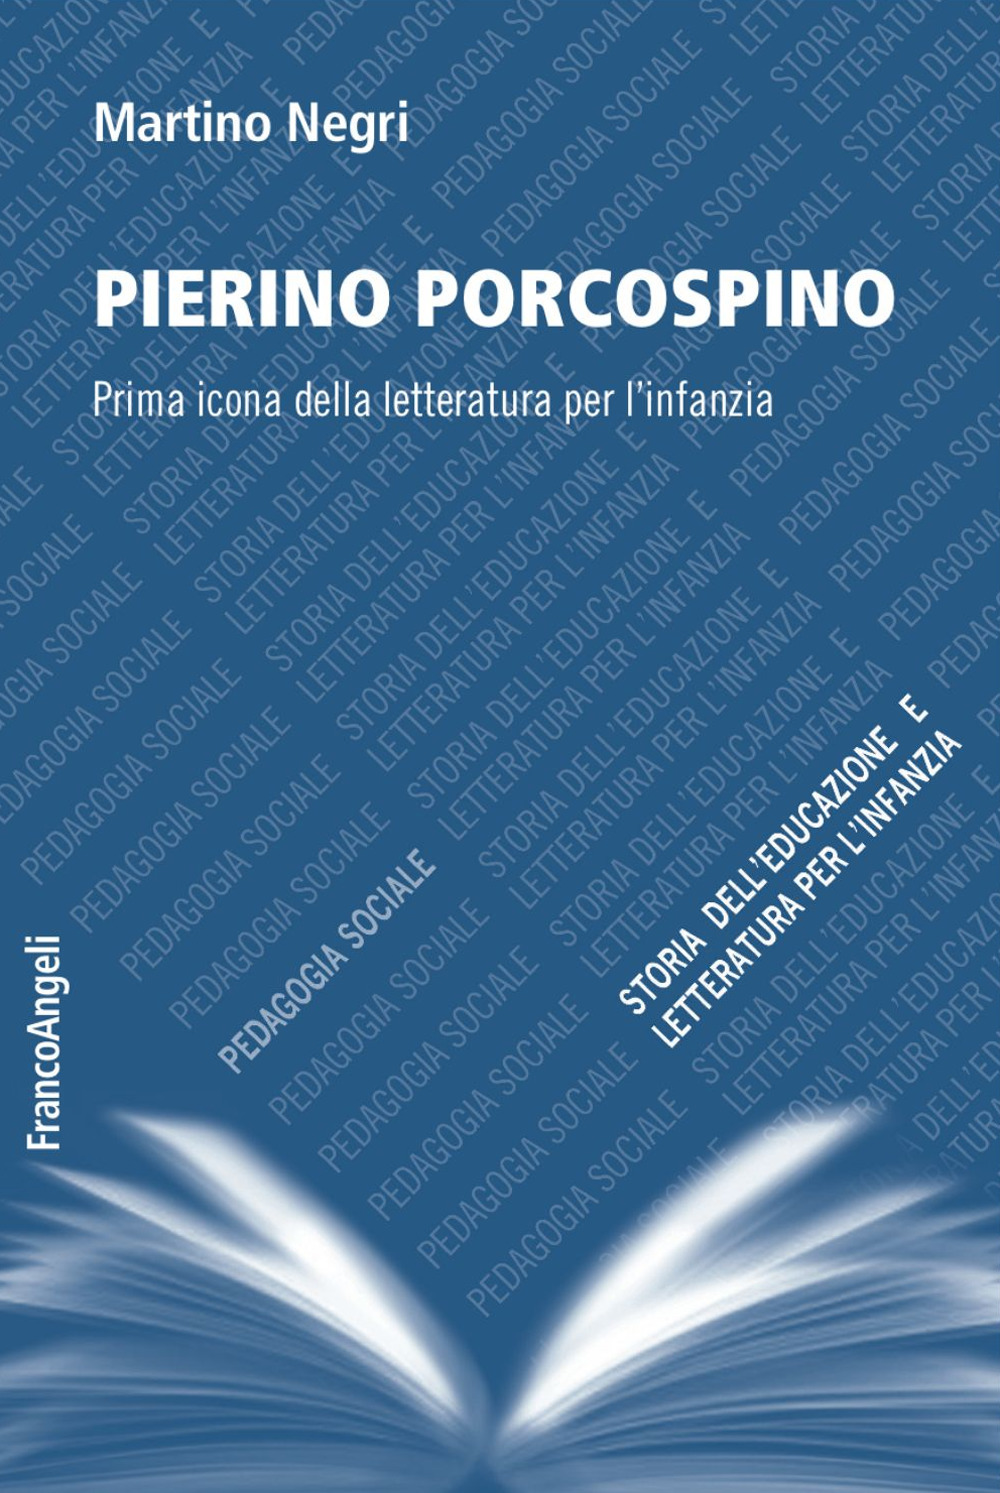 Pierino Porcospino. Prima icona della letteratura per l'infanzia